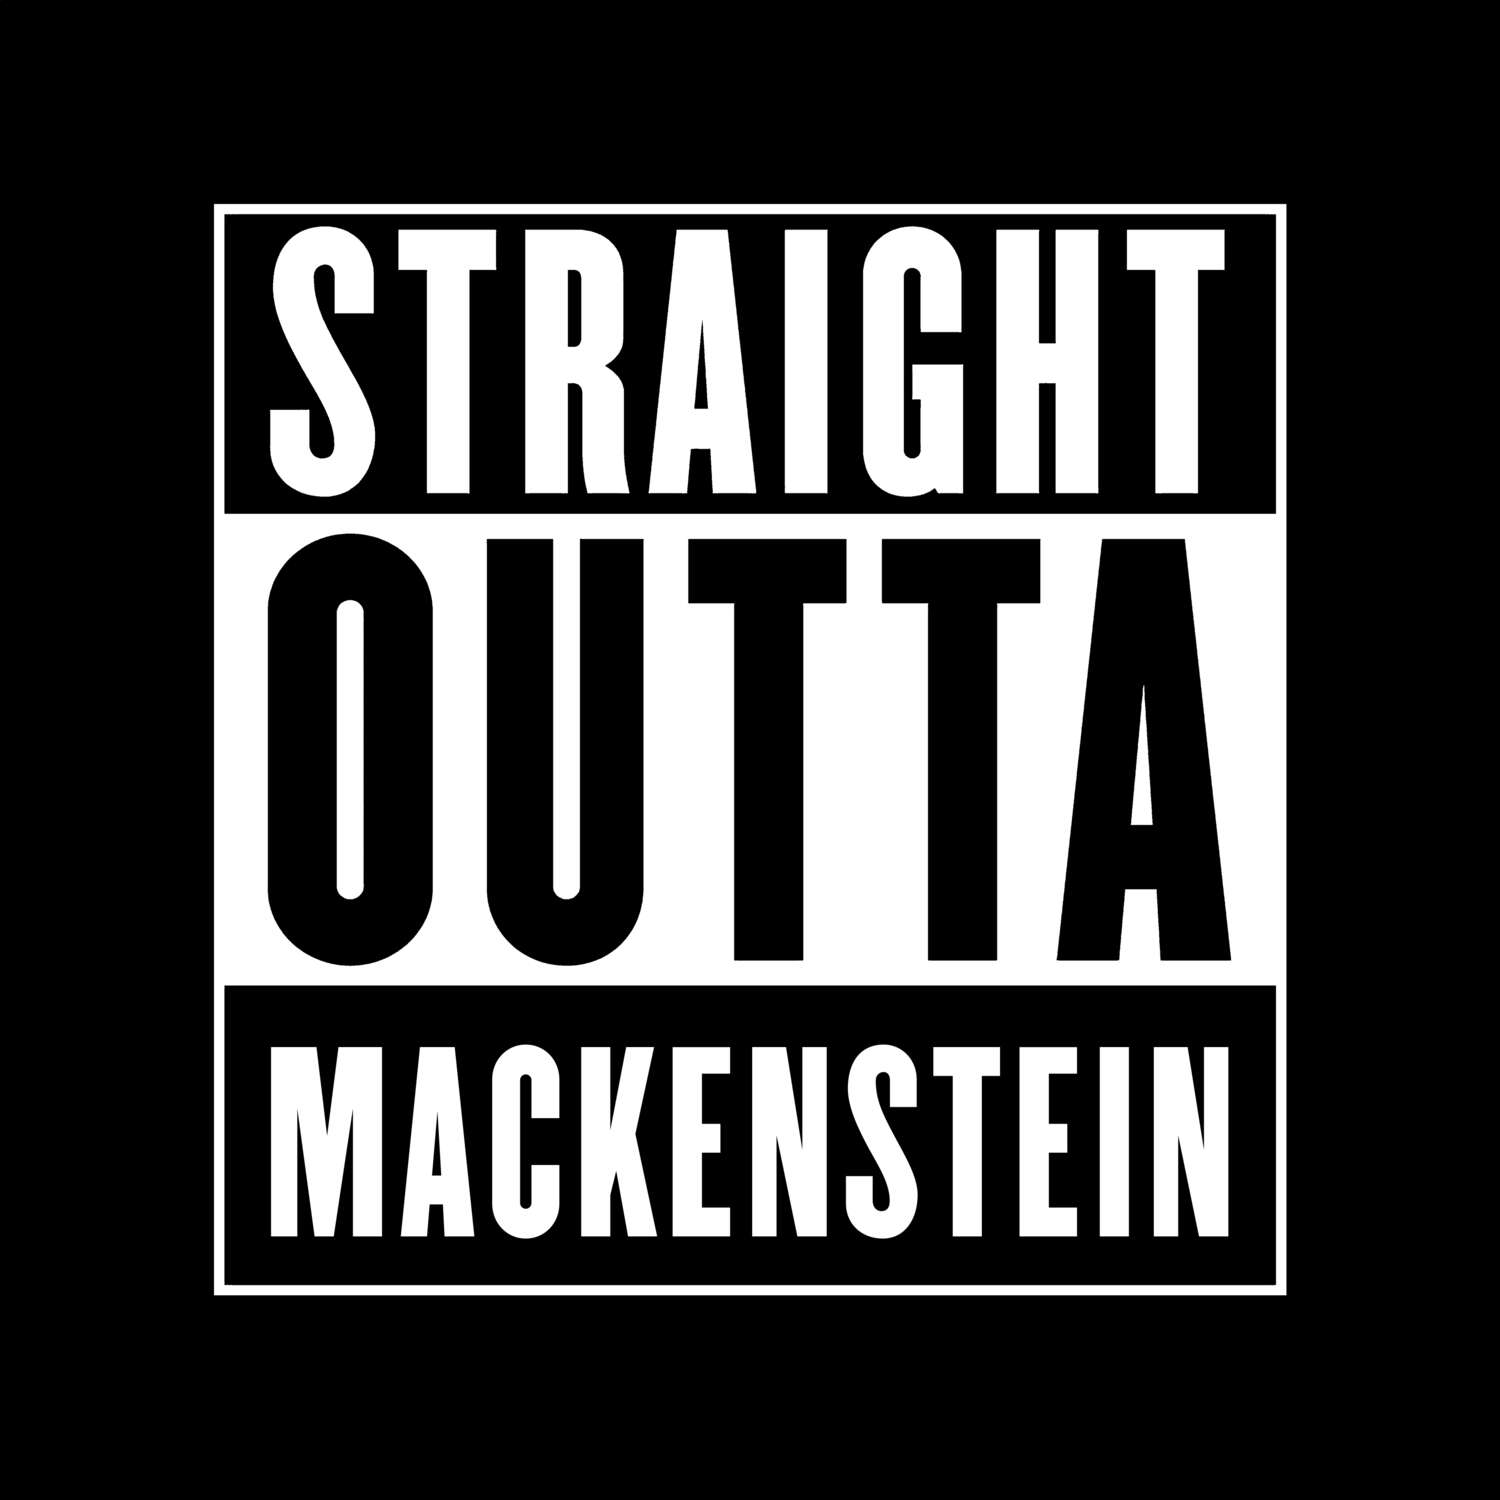 Mackenstein T-Shirt »Straight Outta«